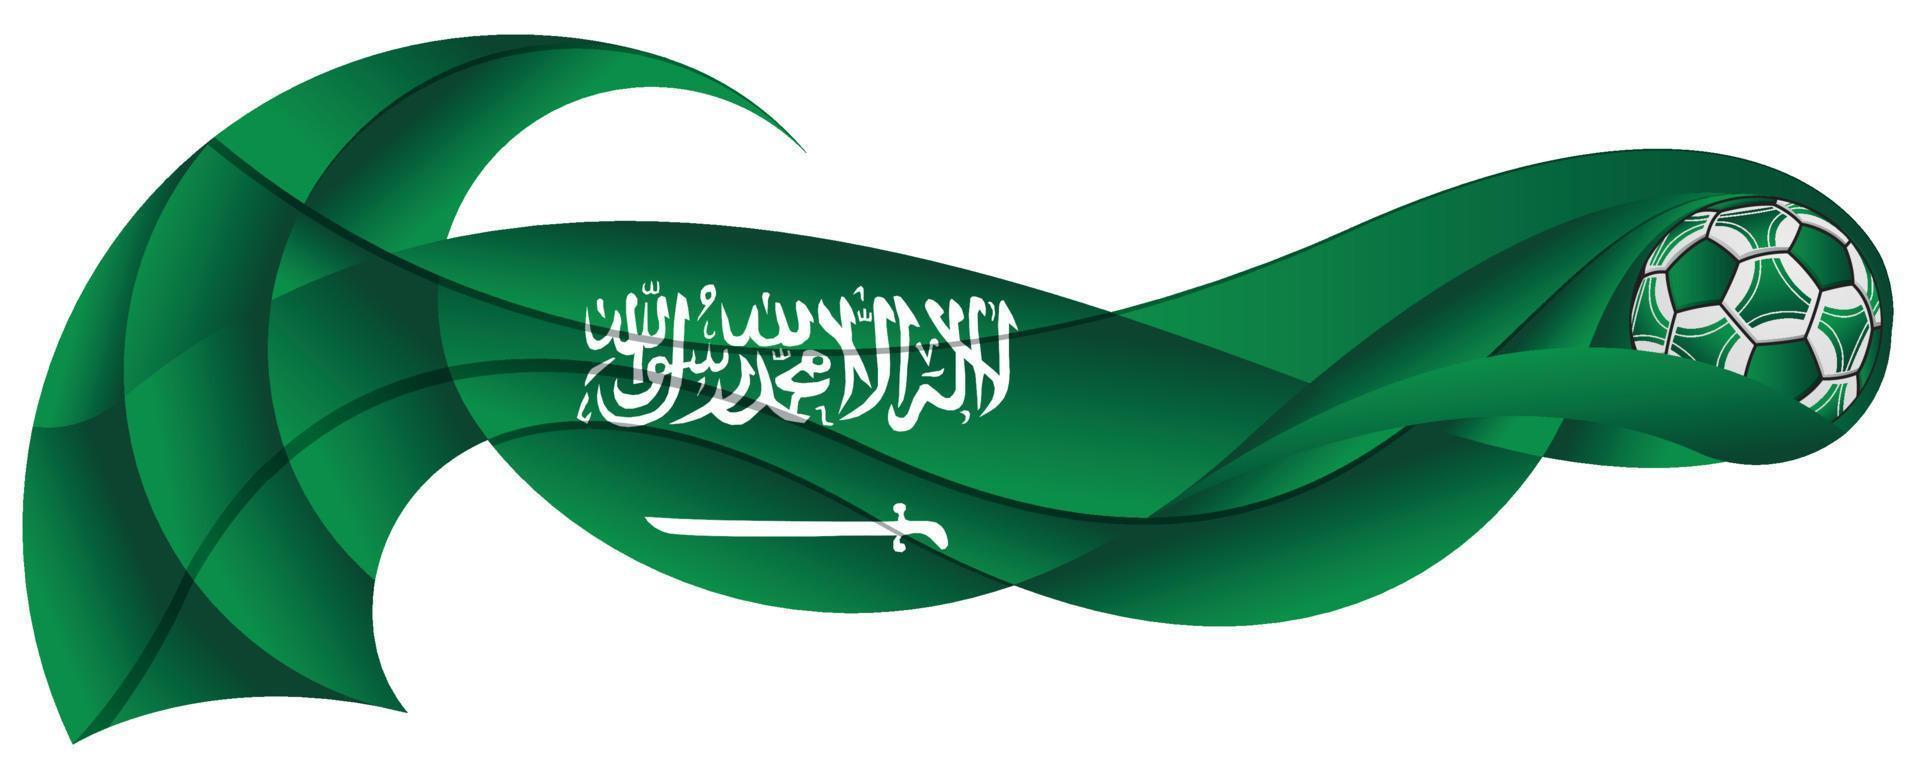 Balón de fútbol verde y blanco dejando un rastro ondulado con los colores de la bandera de Arabia Saudita vector